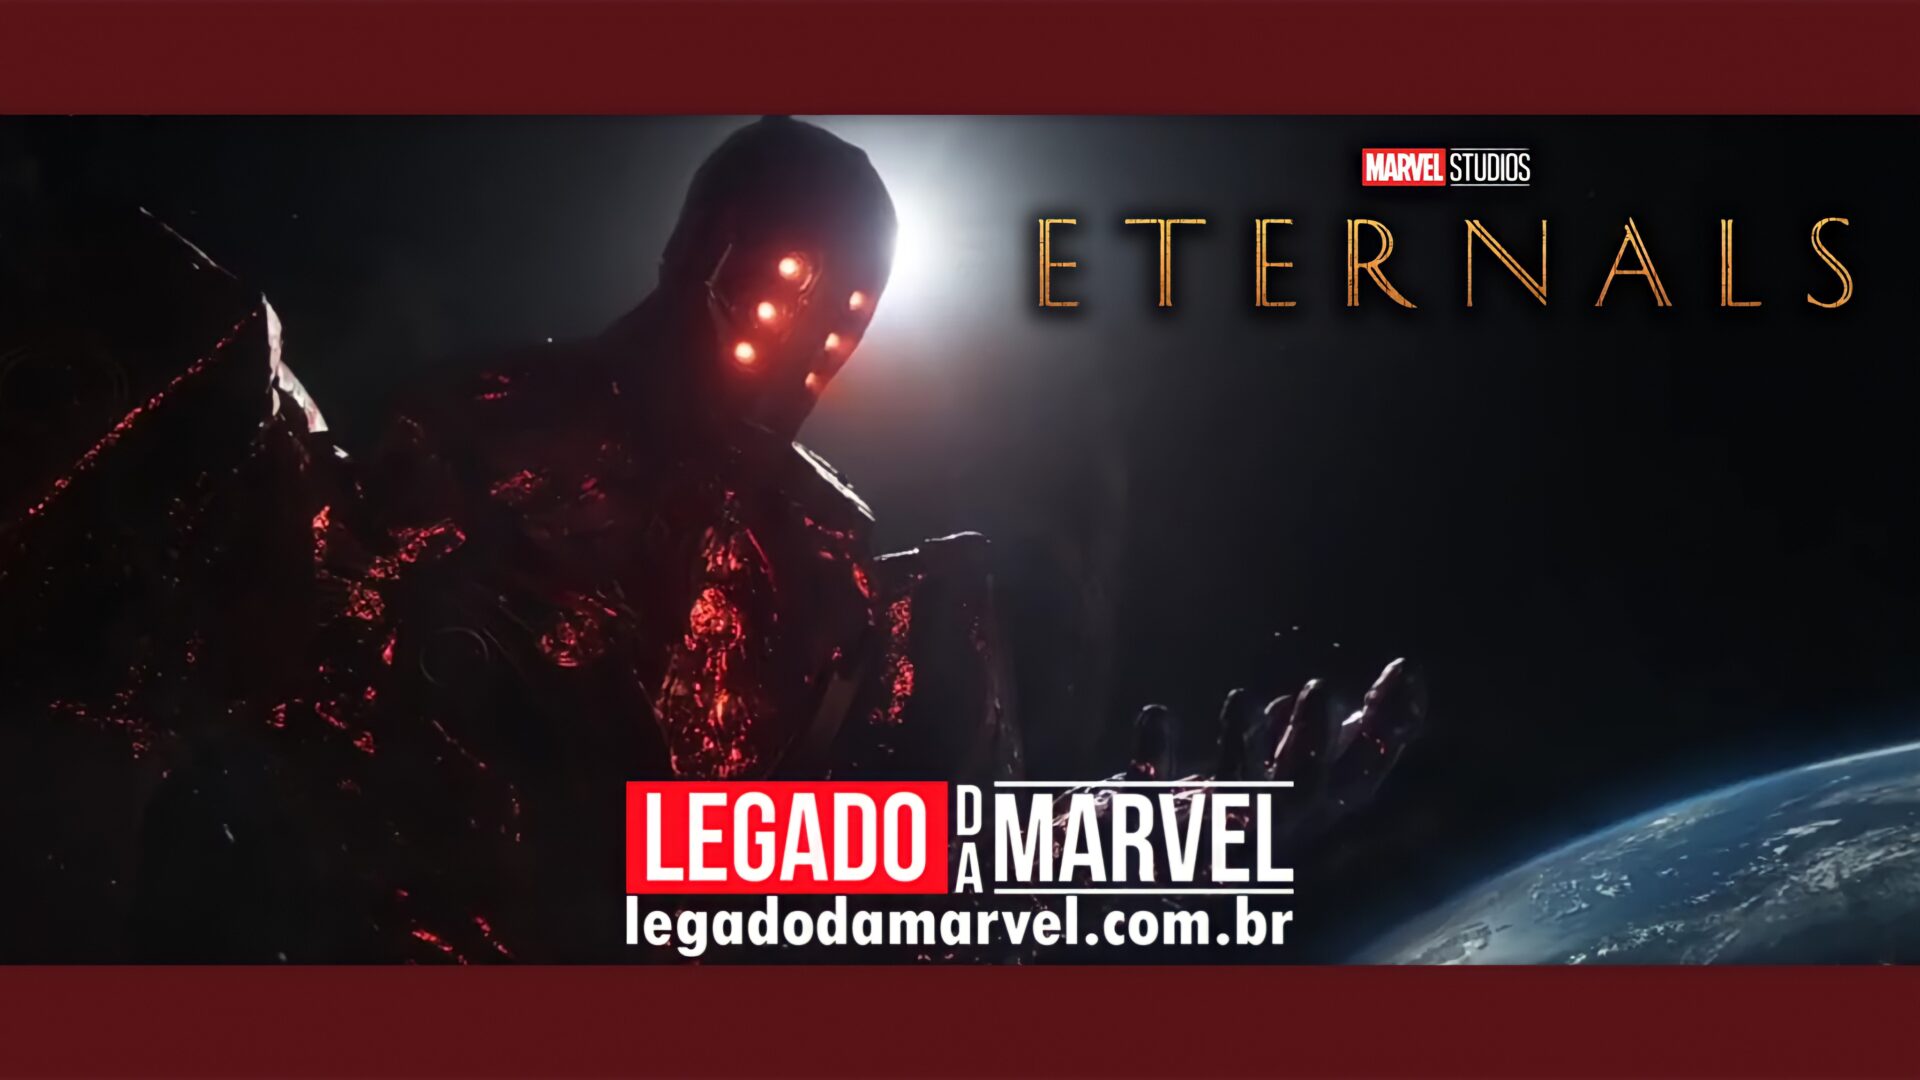  Eternos: Marvel lança novo comercial mostrando Celestial enorme